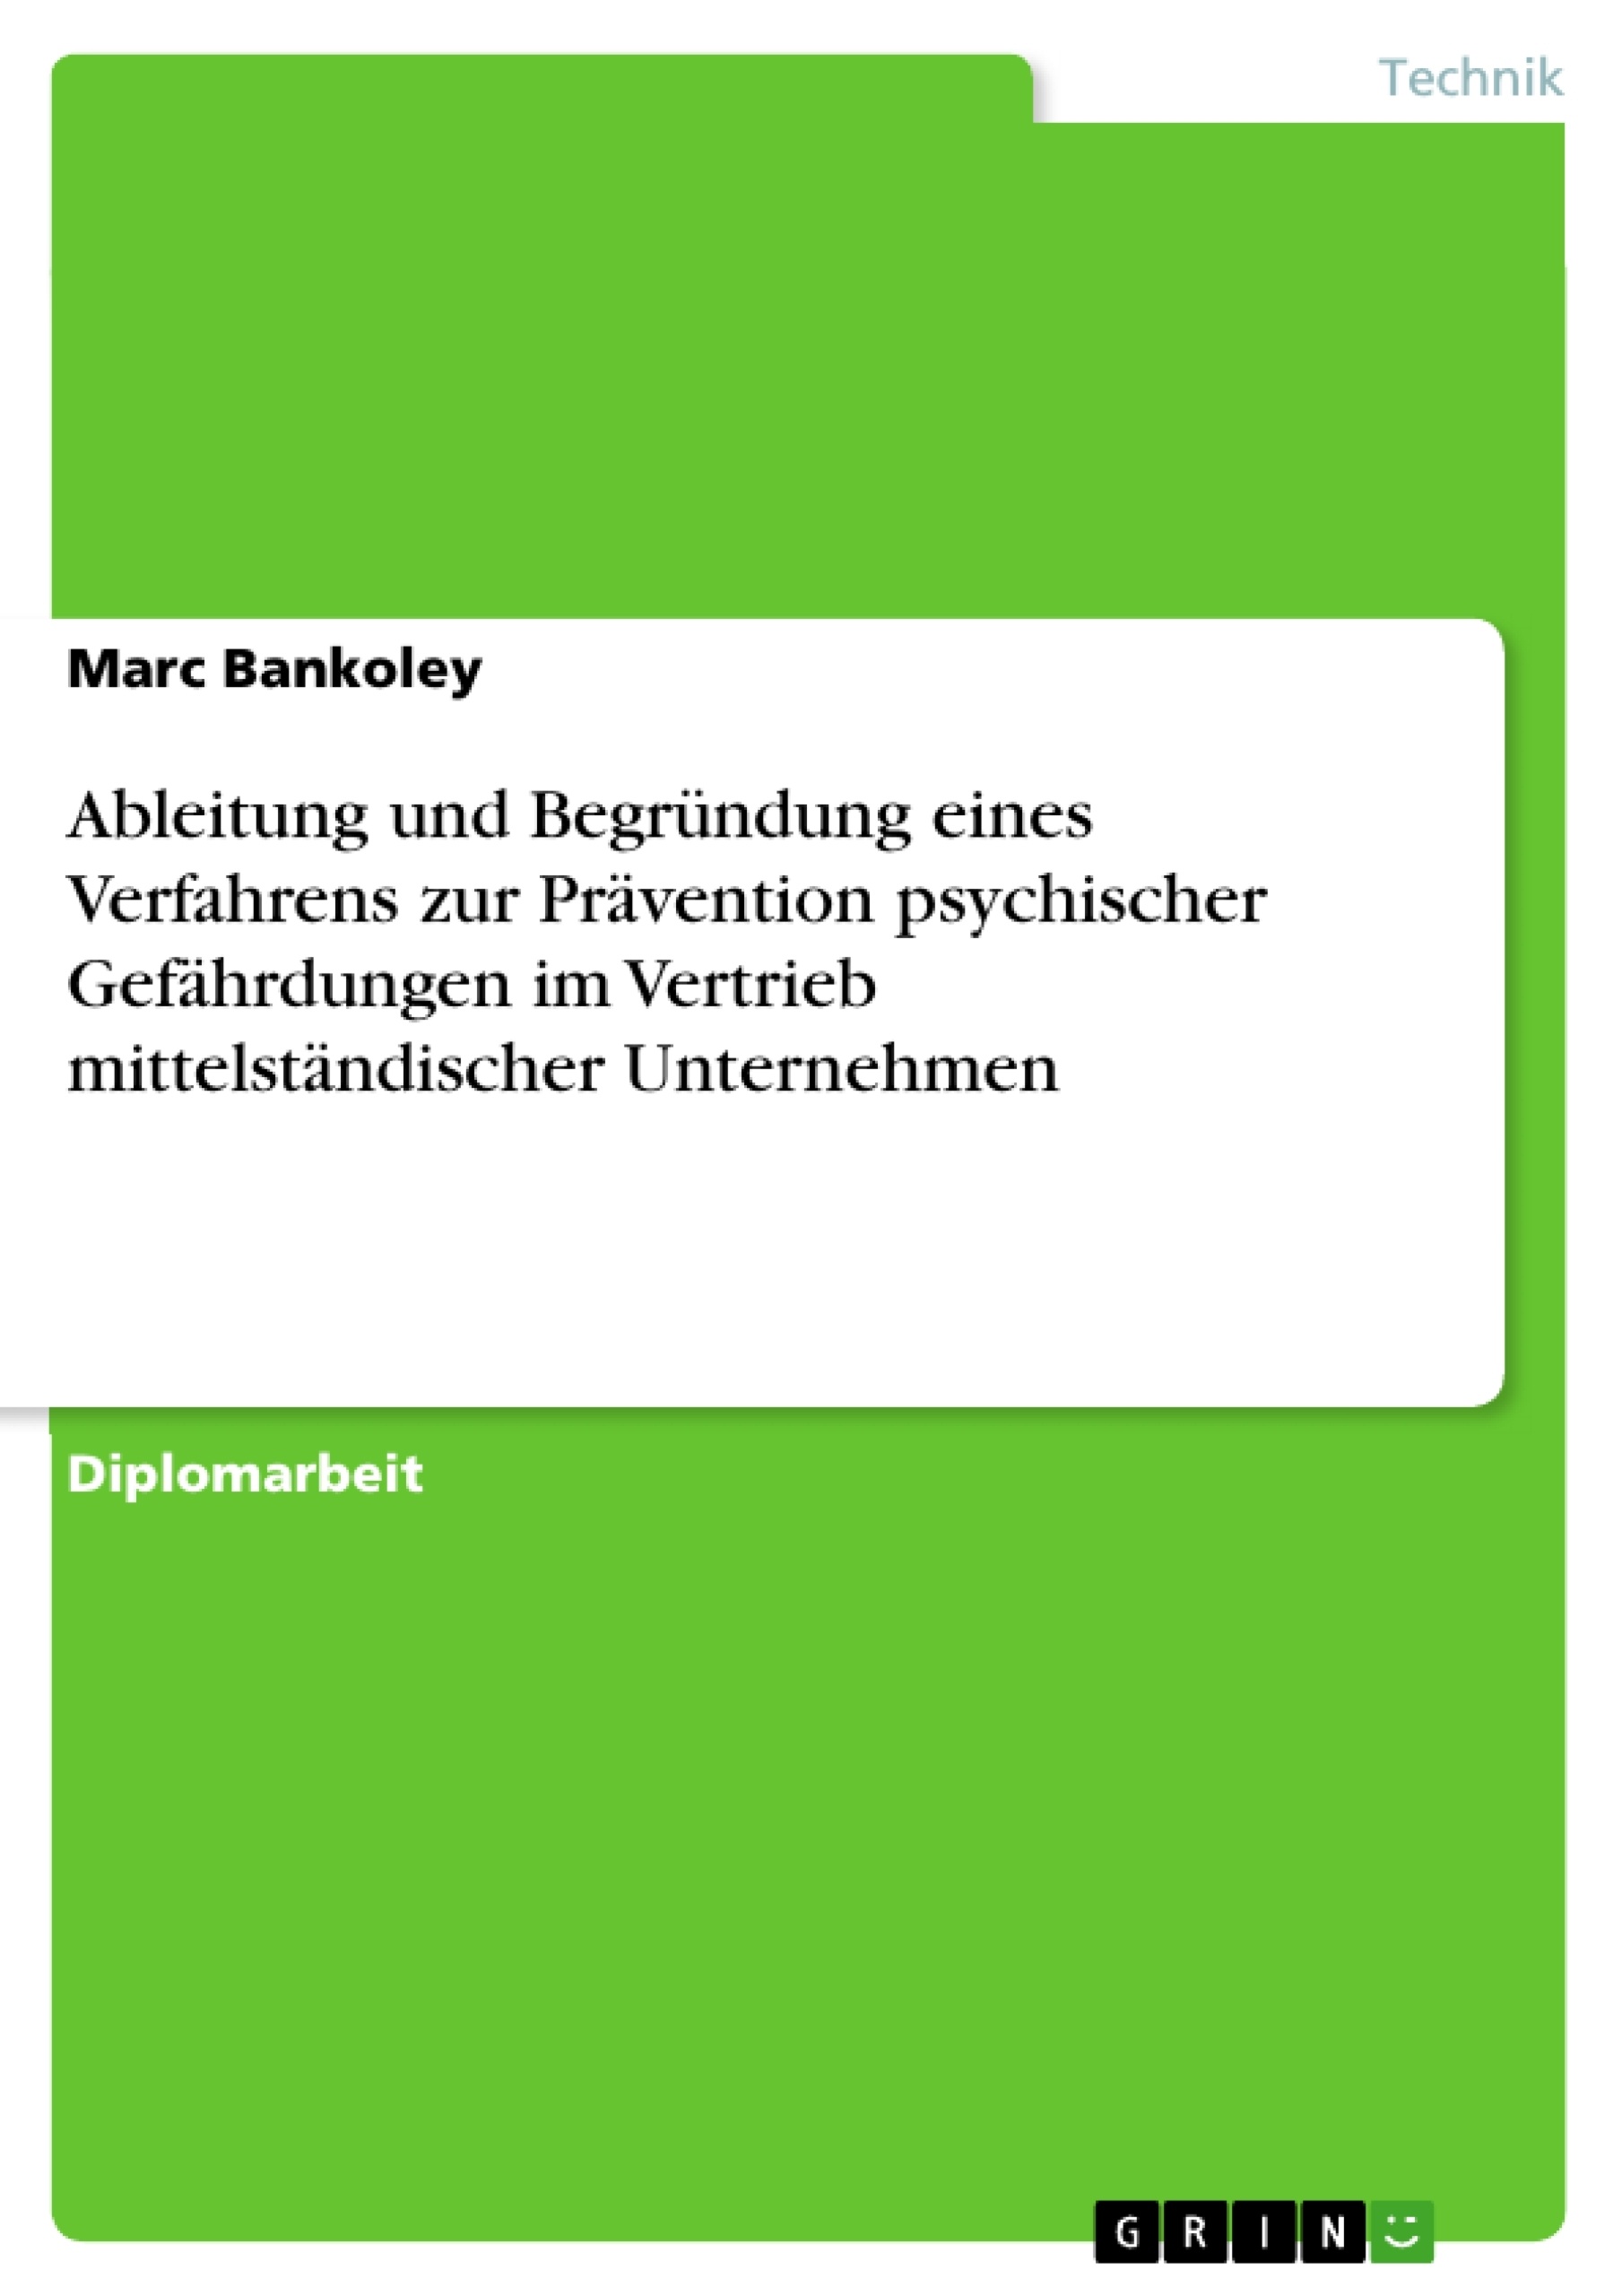 Título: Ableitung und Begründung eines Verfahrens zur Prävention psychischer Gefährdungen im Vertrieb mittelständischer Unternehmen